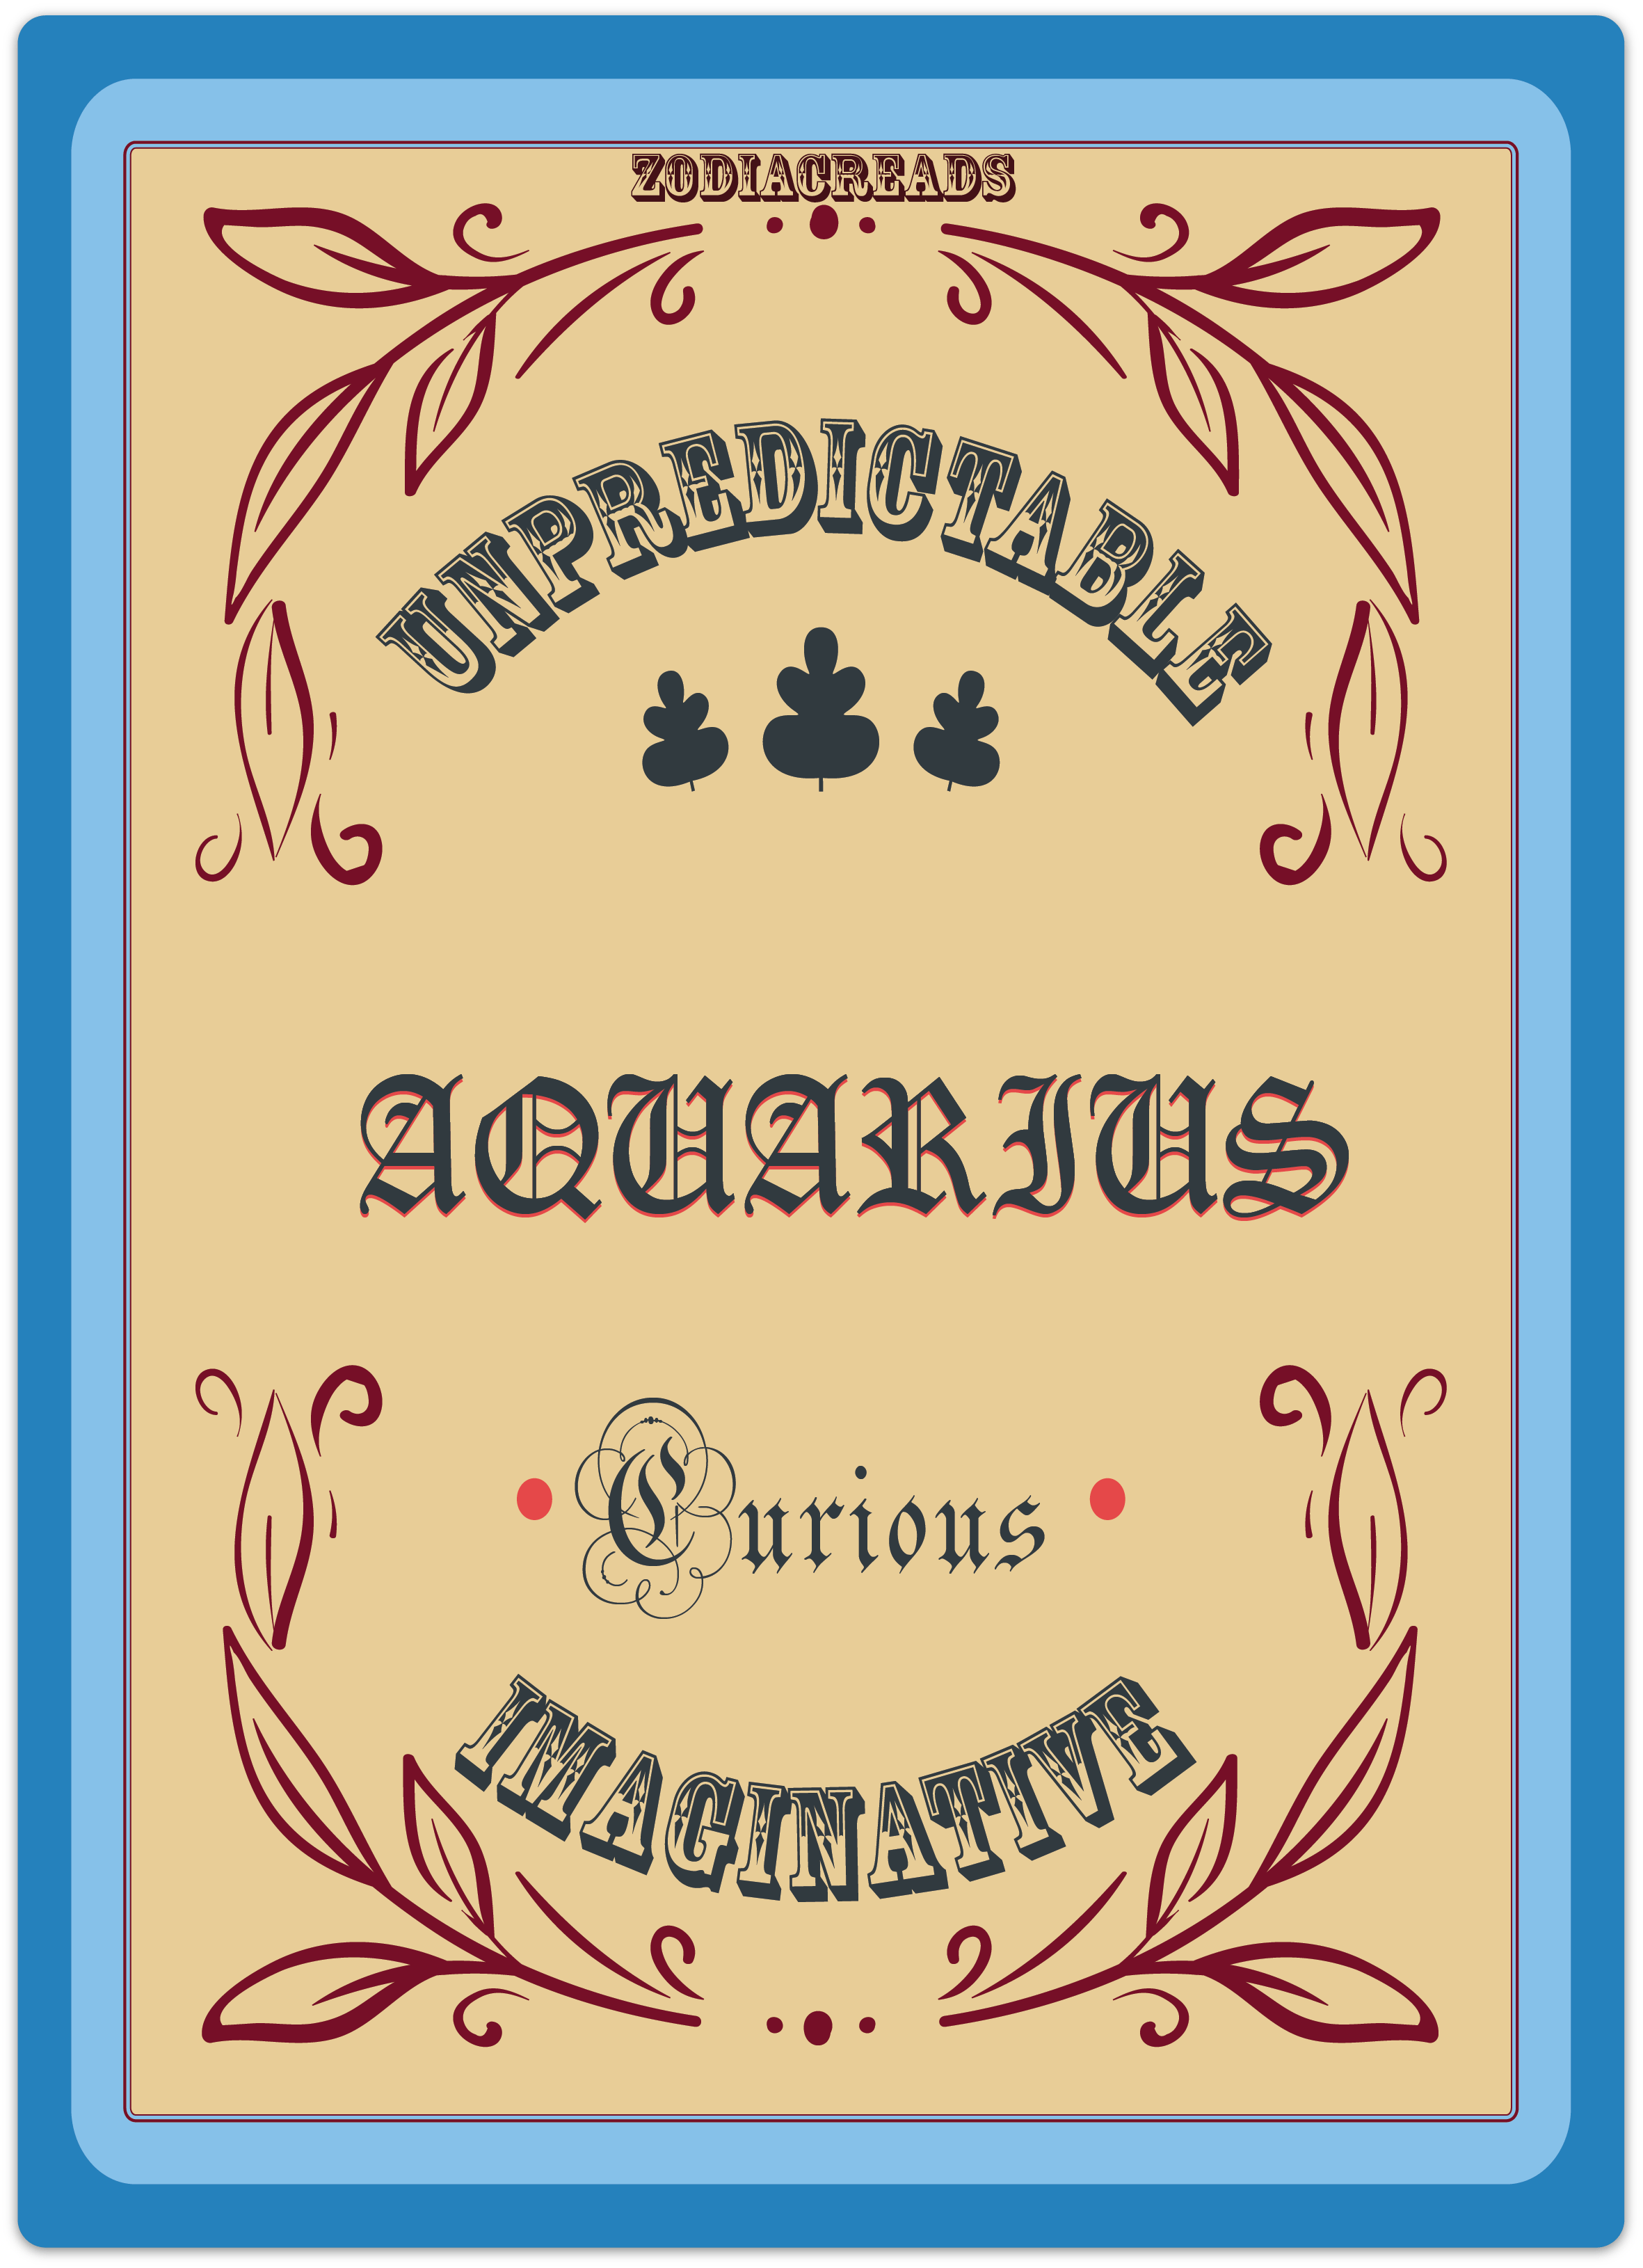 Aquarius_zodiacreads